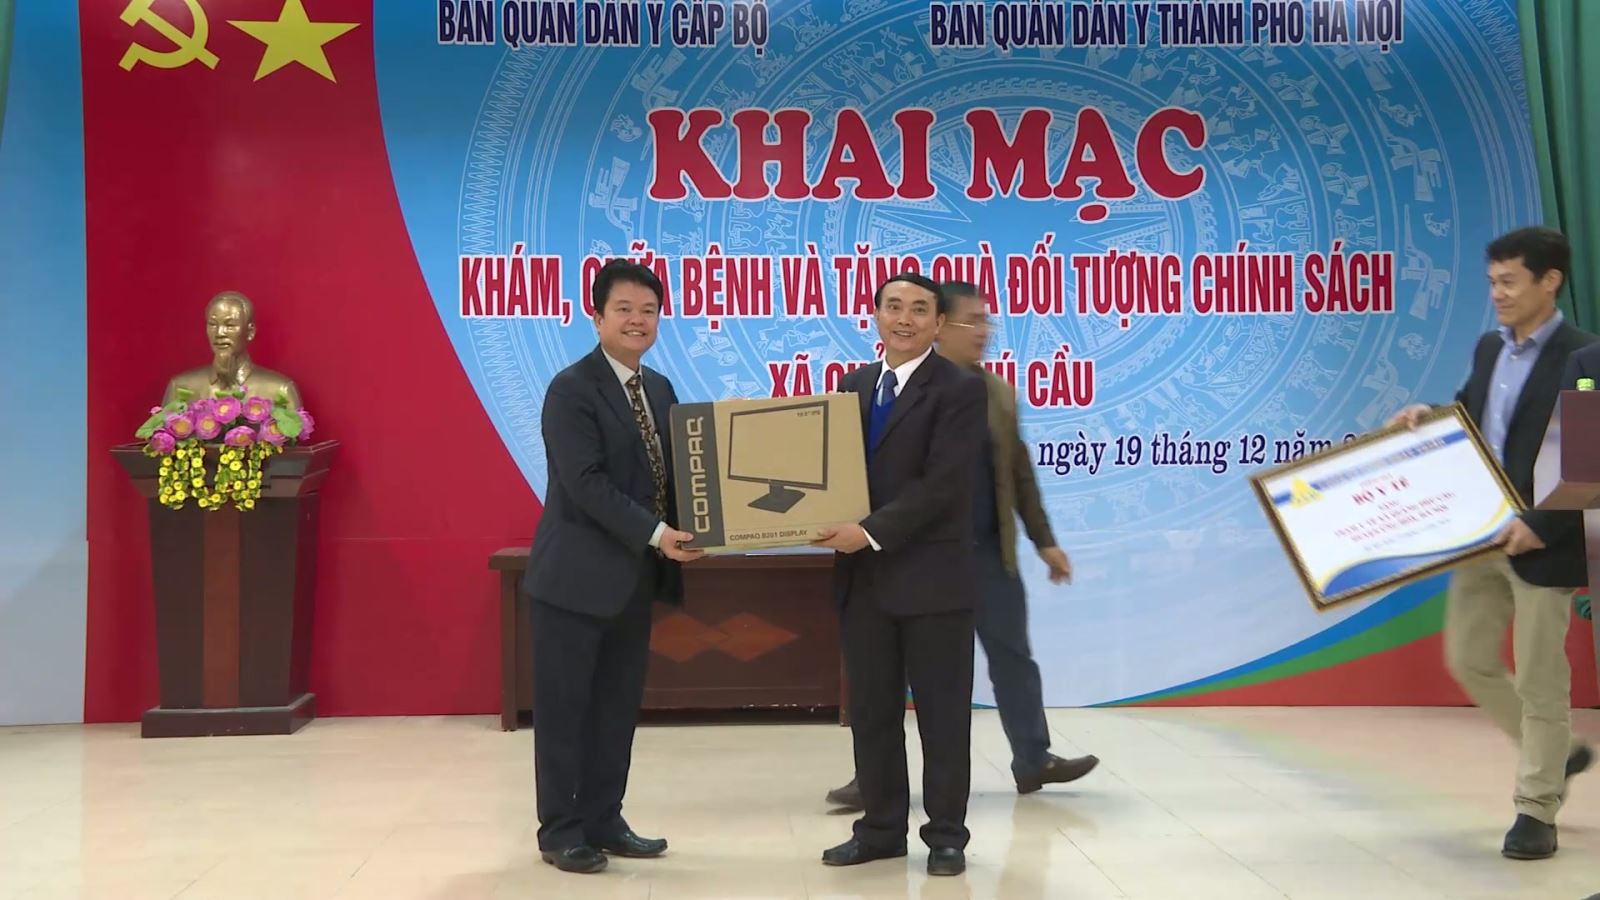 Thứ trưởng Phạm Lê Tuấn thăm và tặng quà cho các đối tượng chính sách xã Quảng Phú Cầu